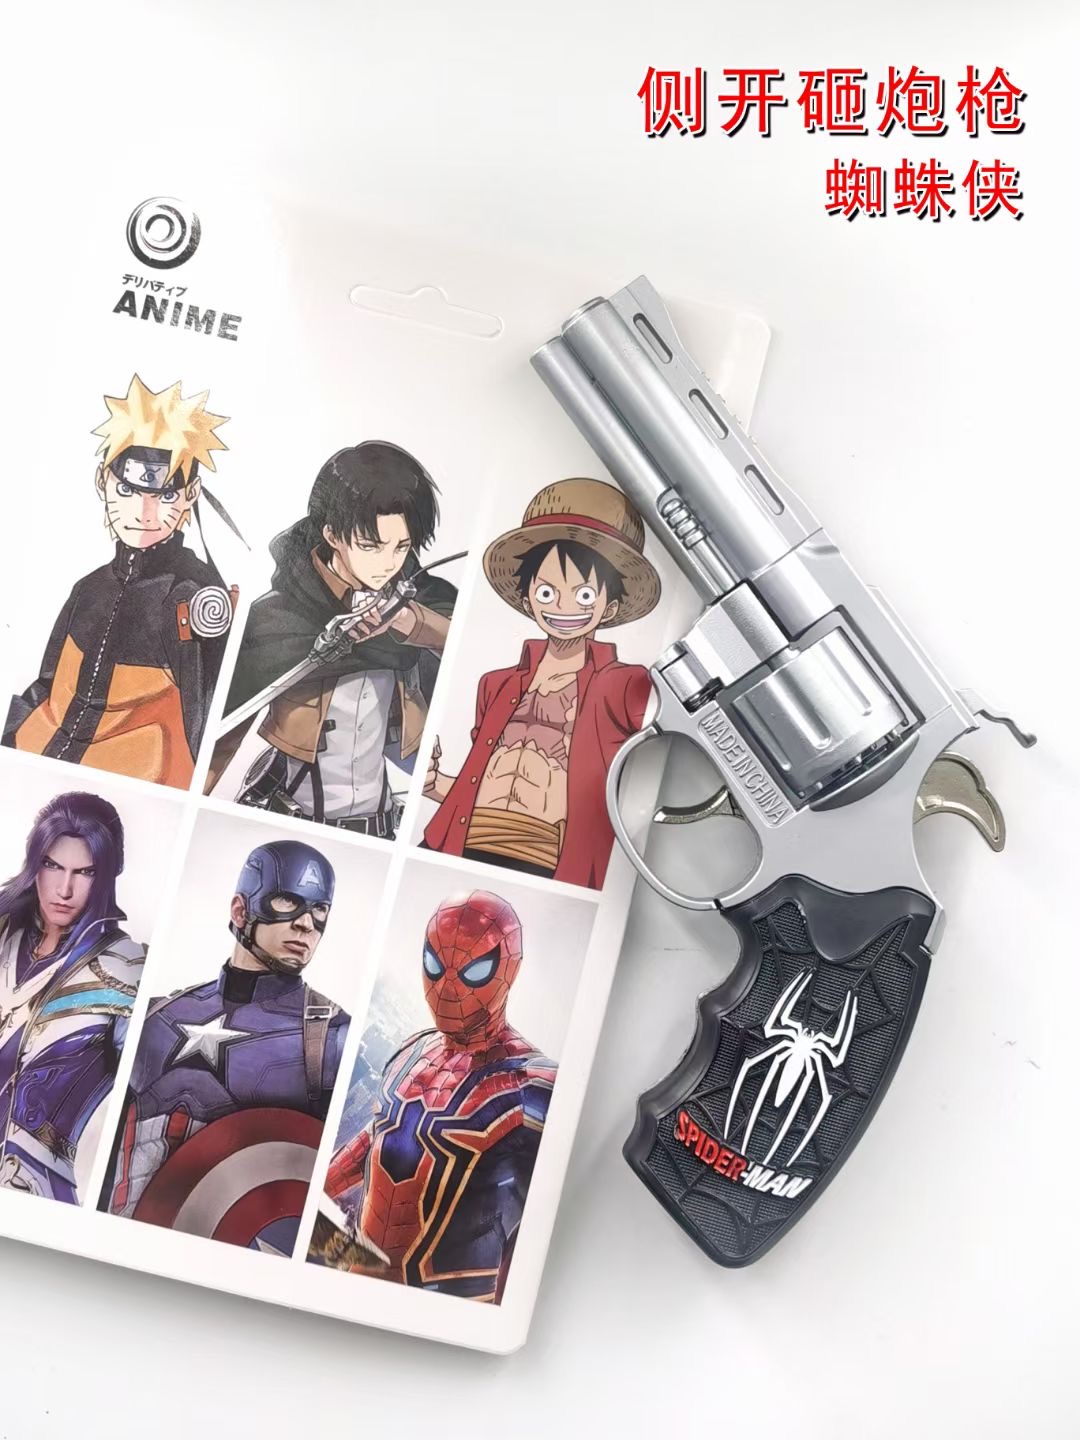 spider man anime Side opening and smashing gun toy